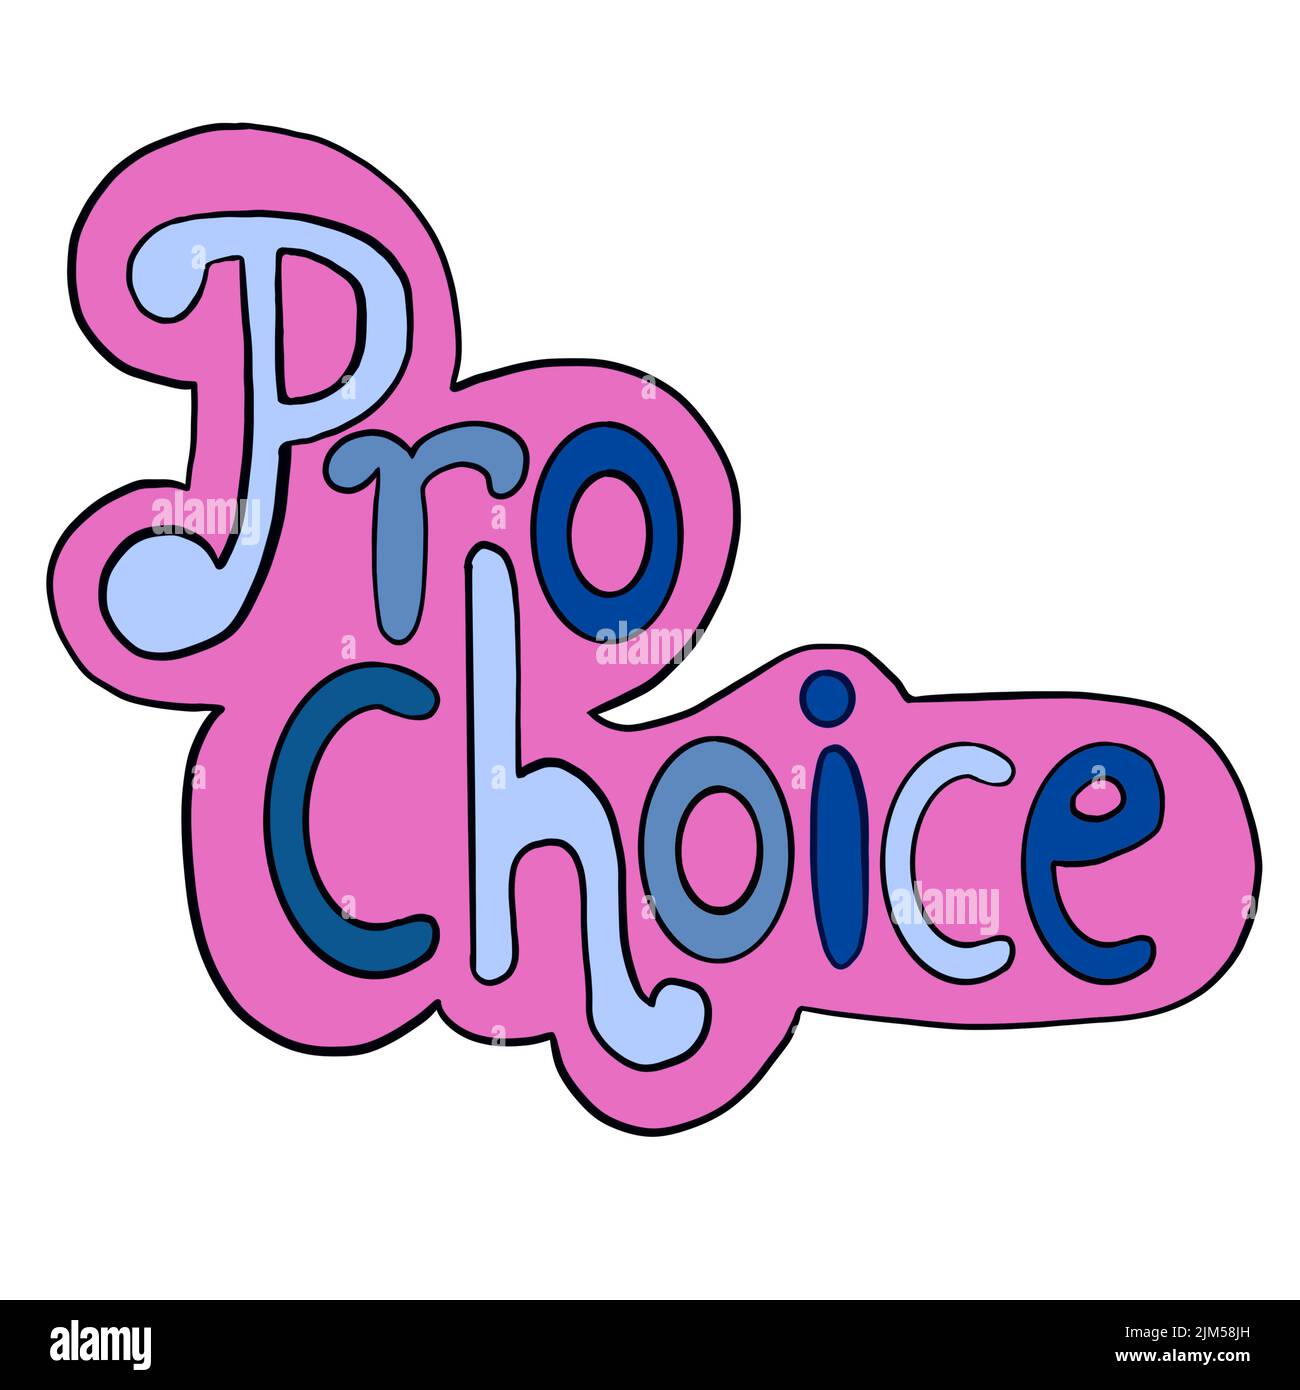 Palabras Pro Choice en estilo rosa azul pegatinas. Ilustración dibujada a mano para los derechos reproductivos al aborto, el concepto feminista, el feminismo de la atención de la salud se ha convertido en una pancarta Foto de stock